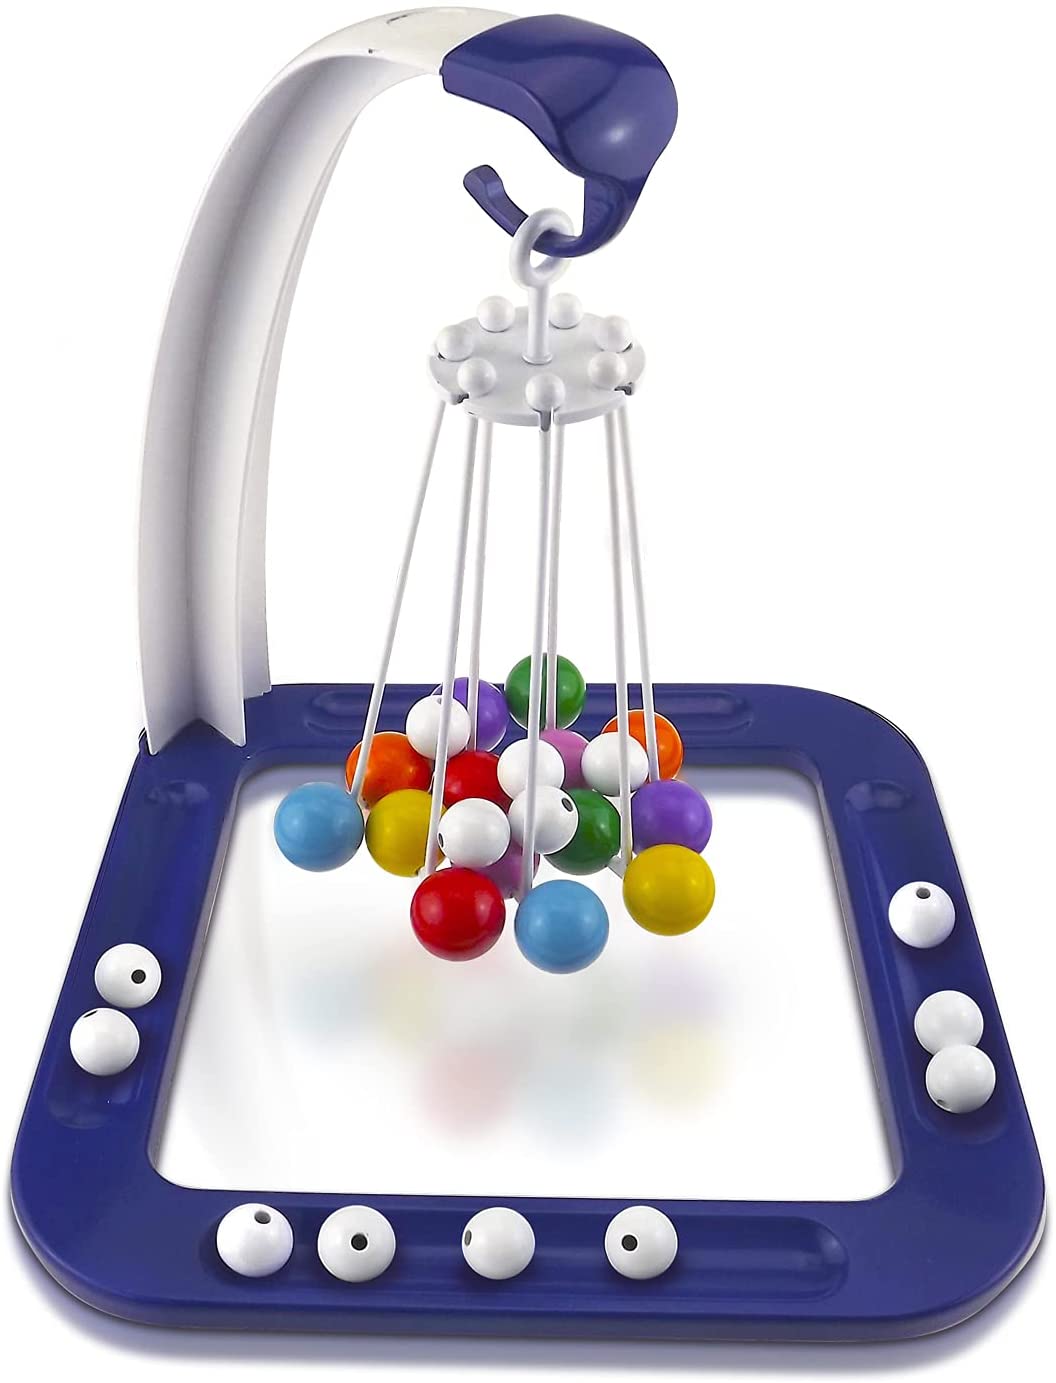 子供をトレーニングして、バランス感覚を大切にする親子の積み重ね重力子供のおもちゃデスクトップゲームです。